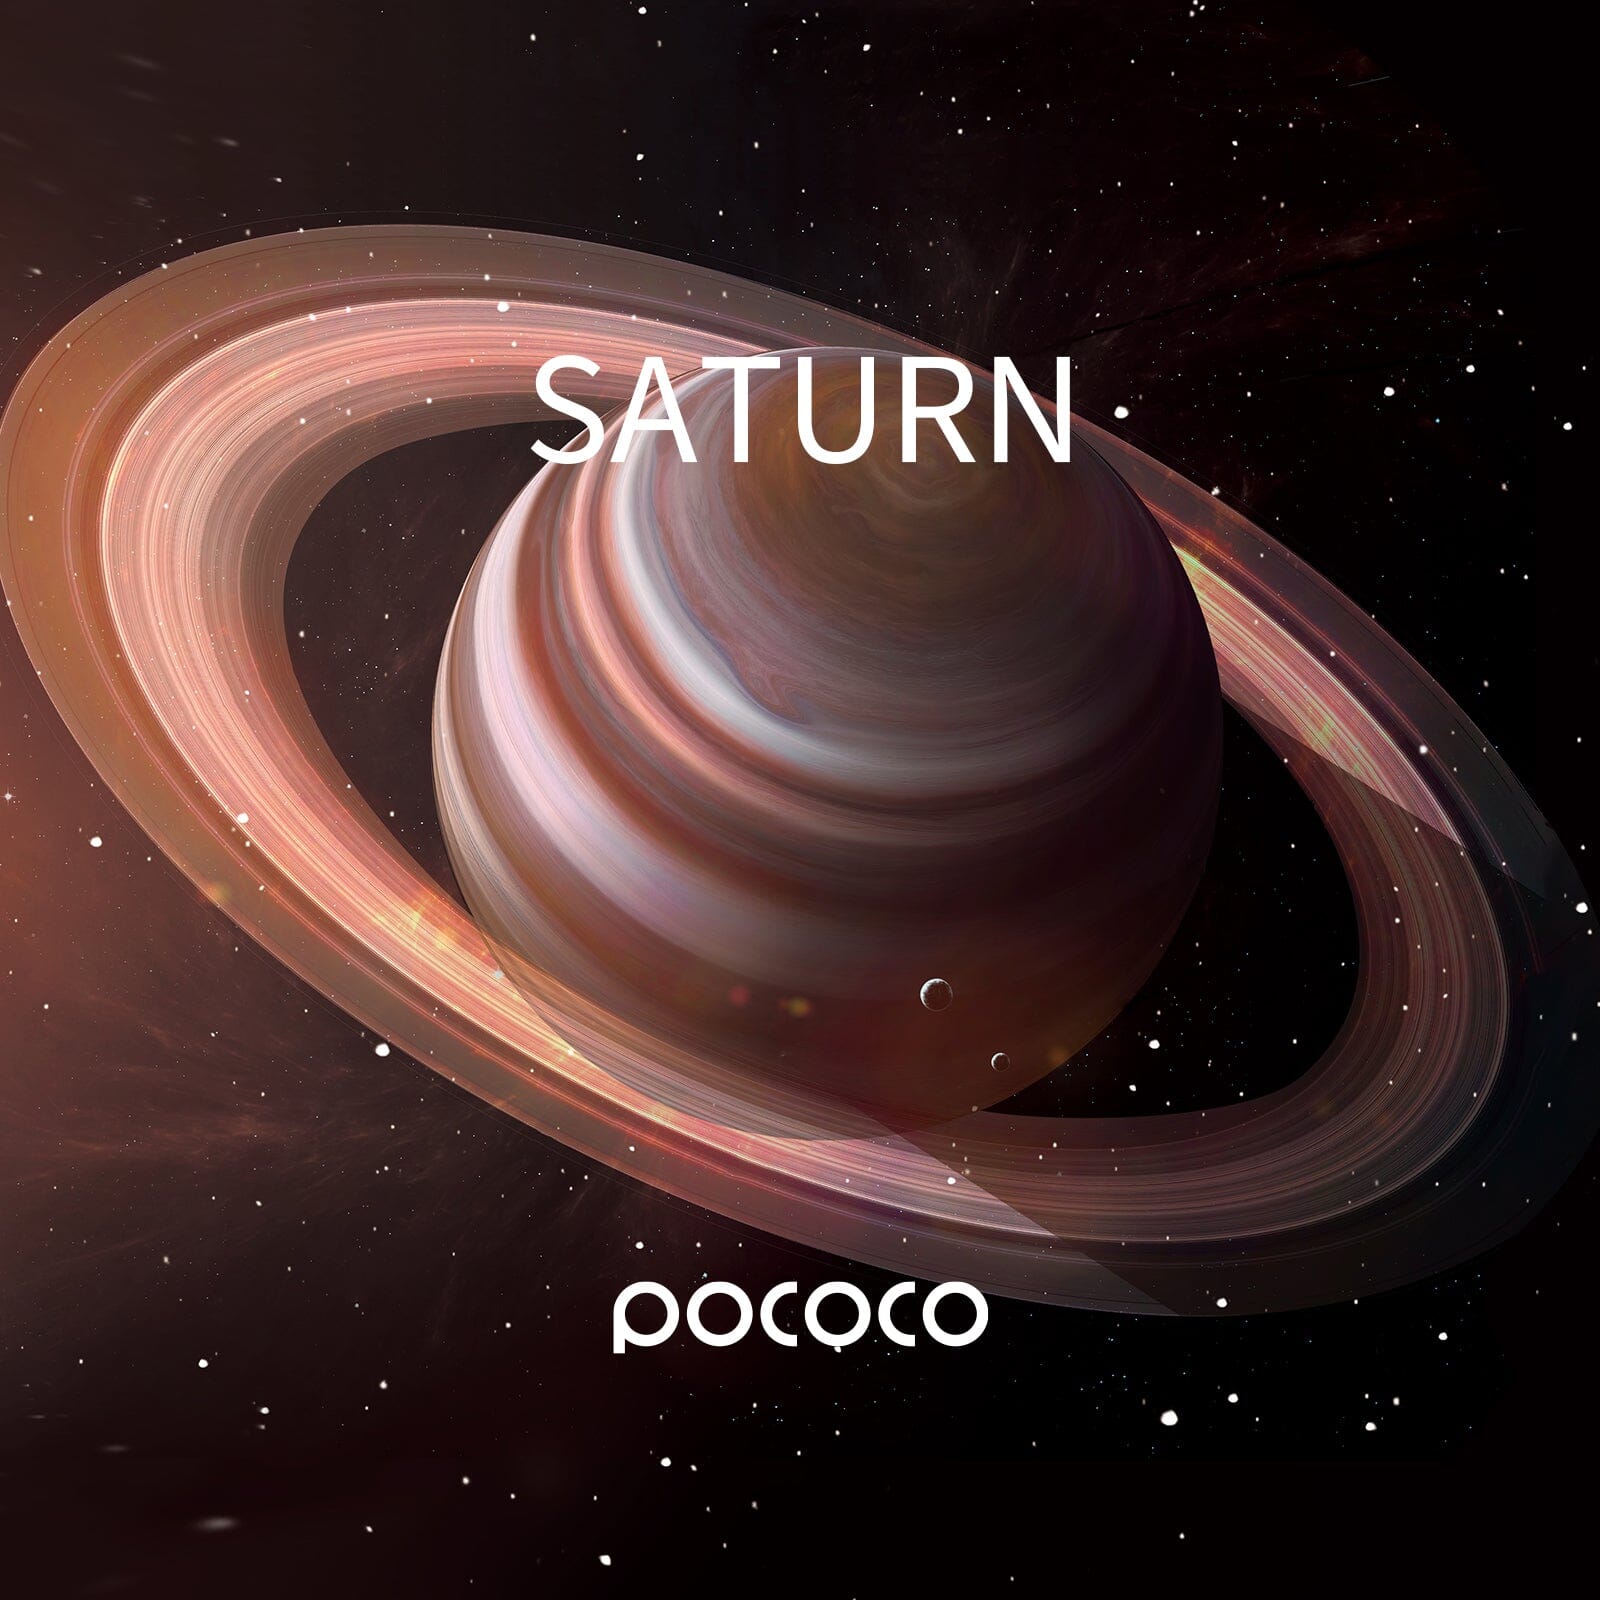 POCOCO Galaxy Projector Disc - Saturn